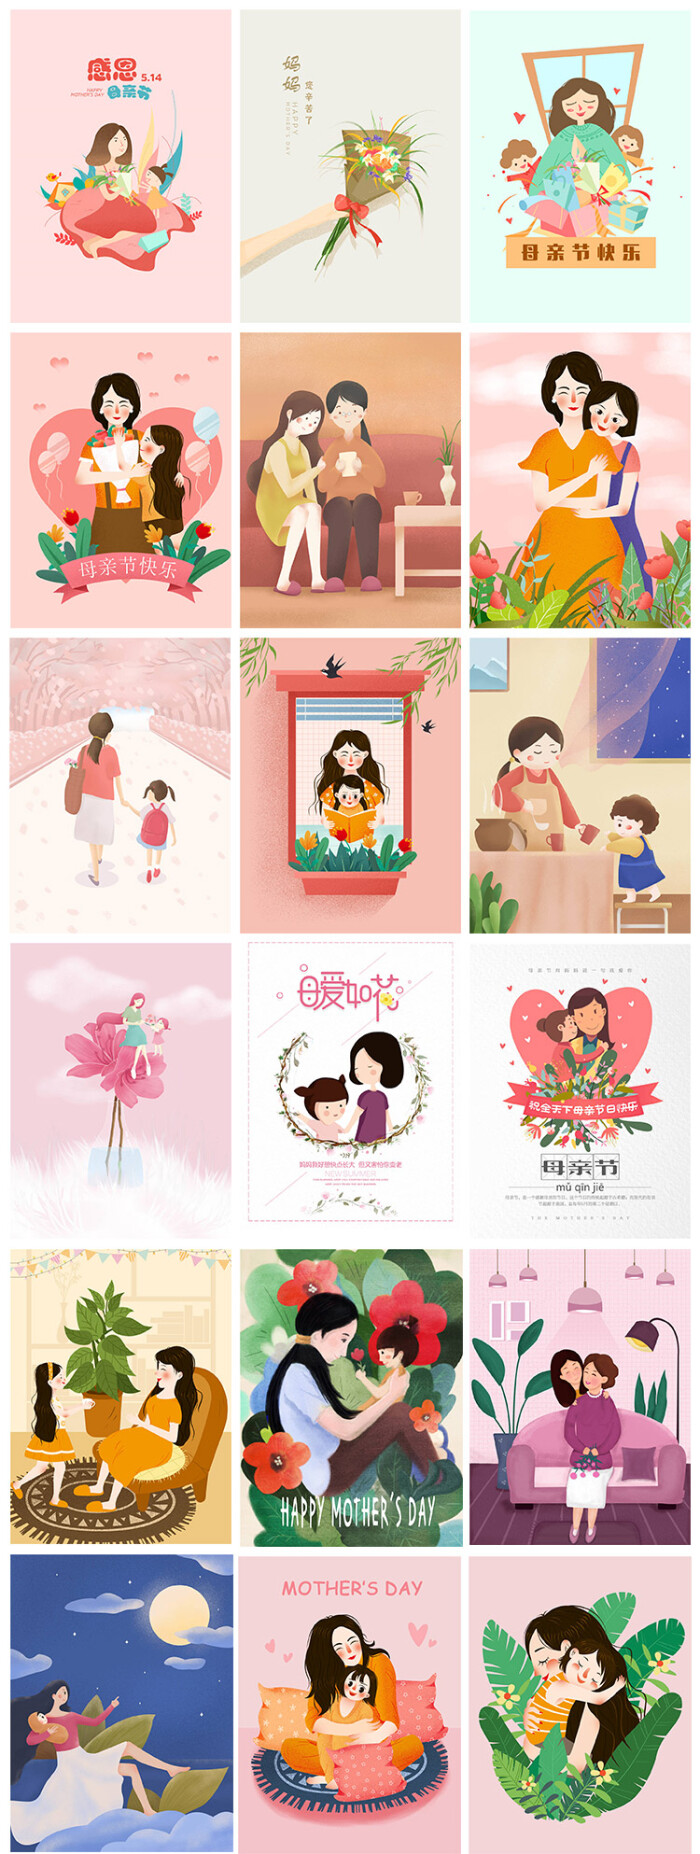 母亲节感恩回馈促销康乃馨最美妈妈手绘插画海报设计psd素材模板